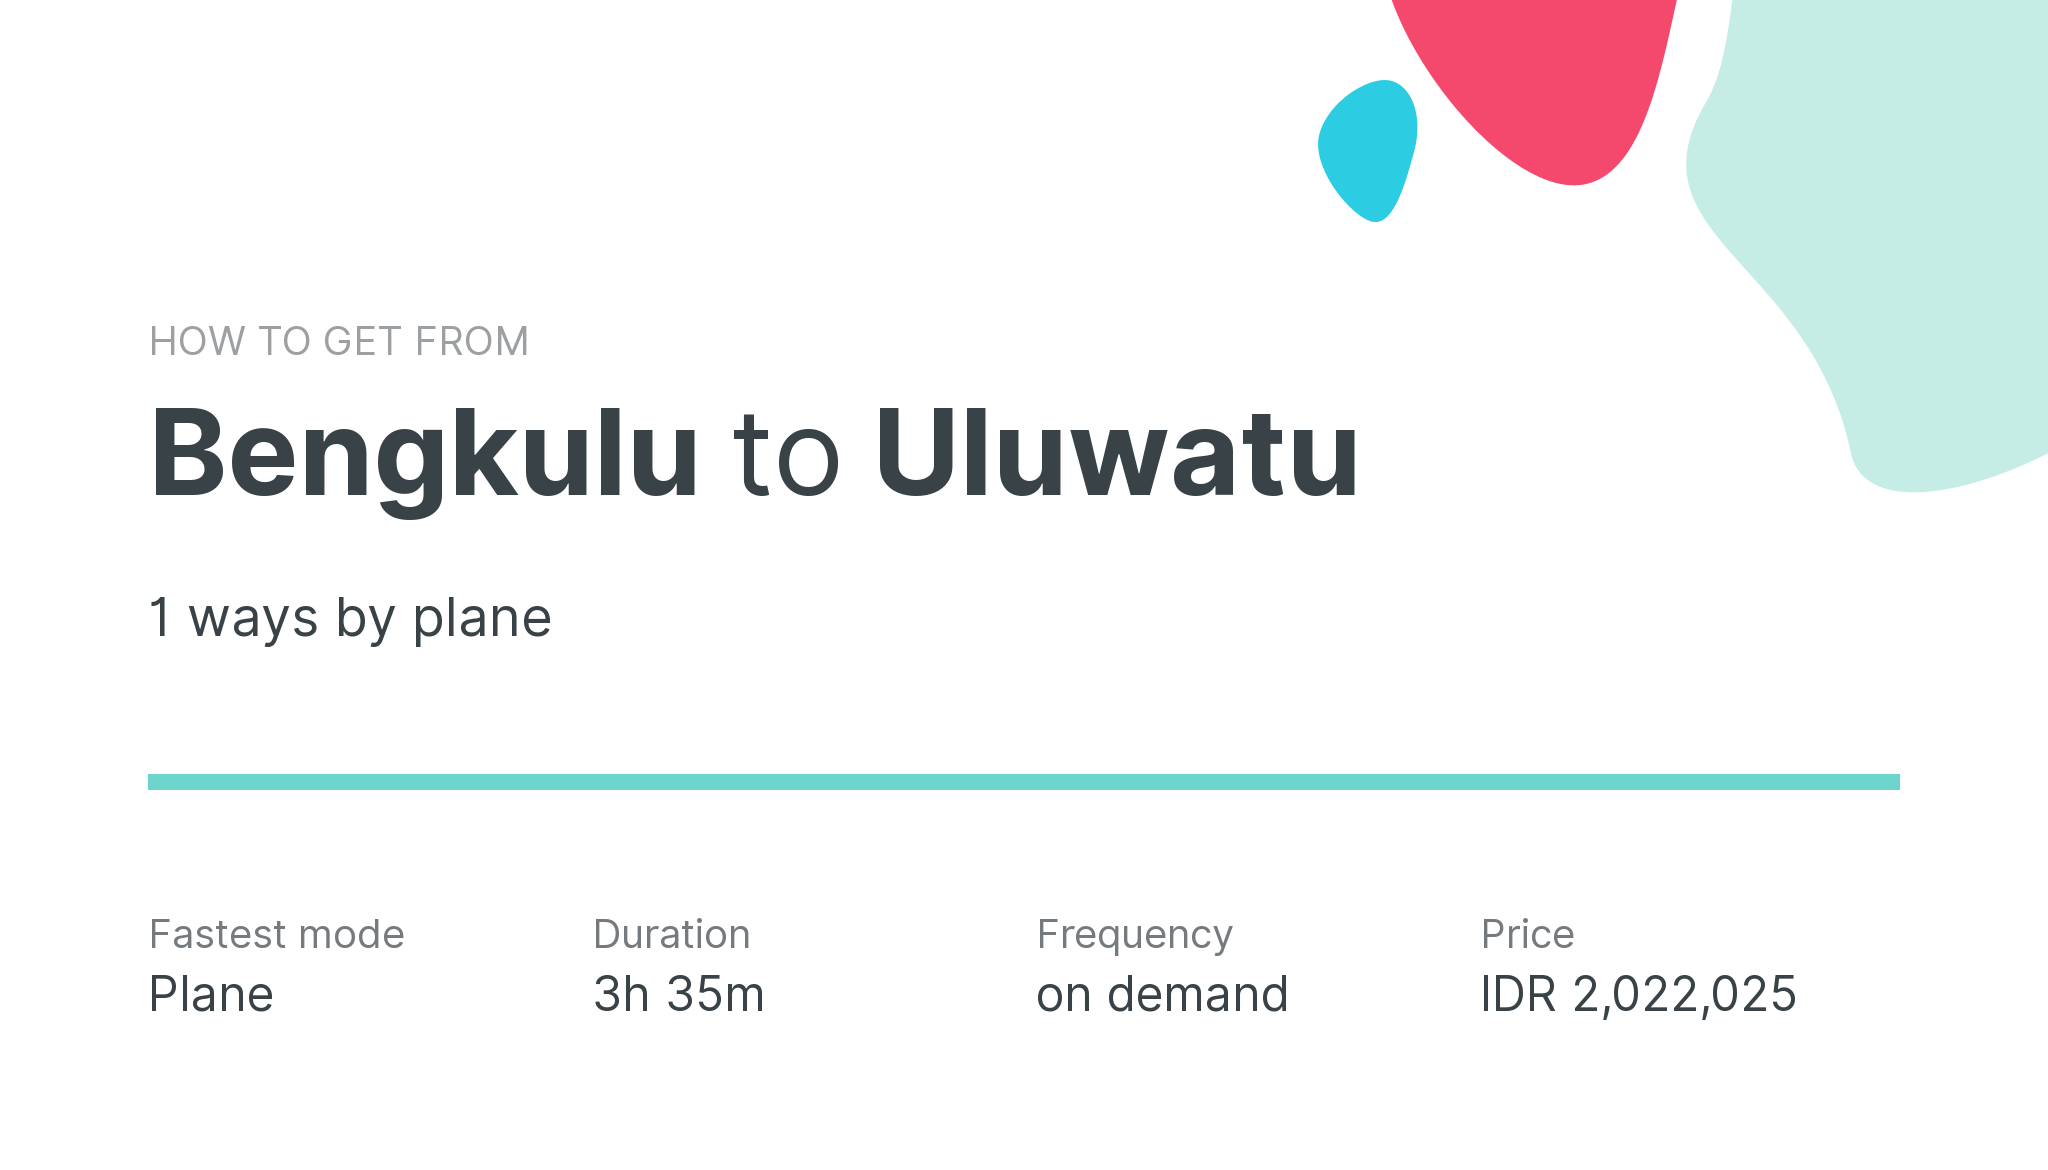 How do I get from Bengkulu to Uluwatu